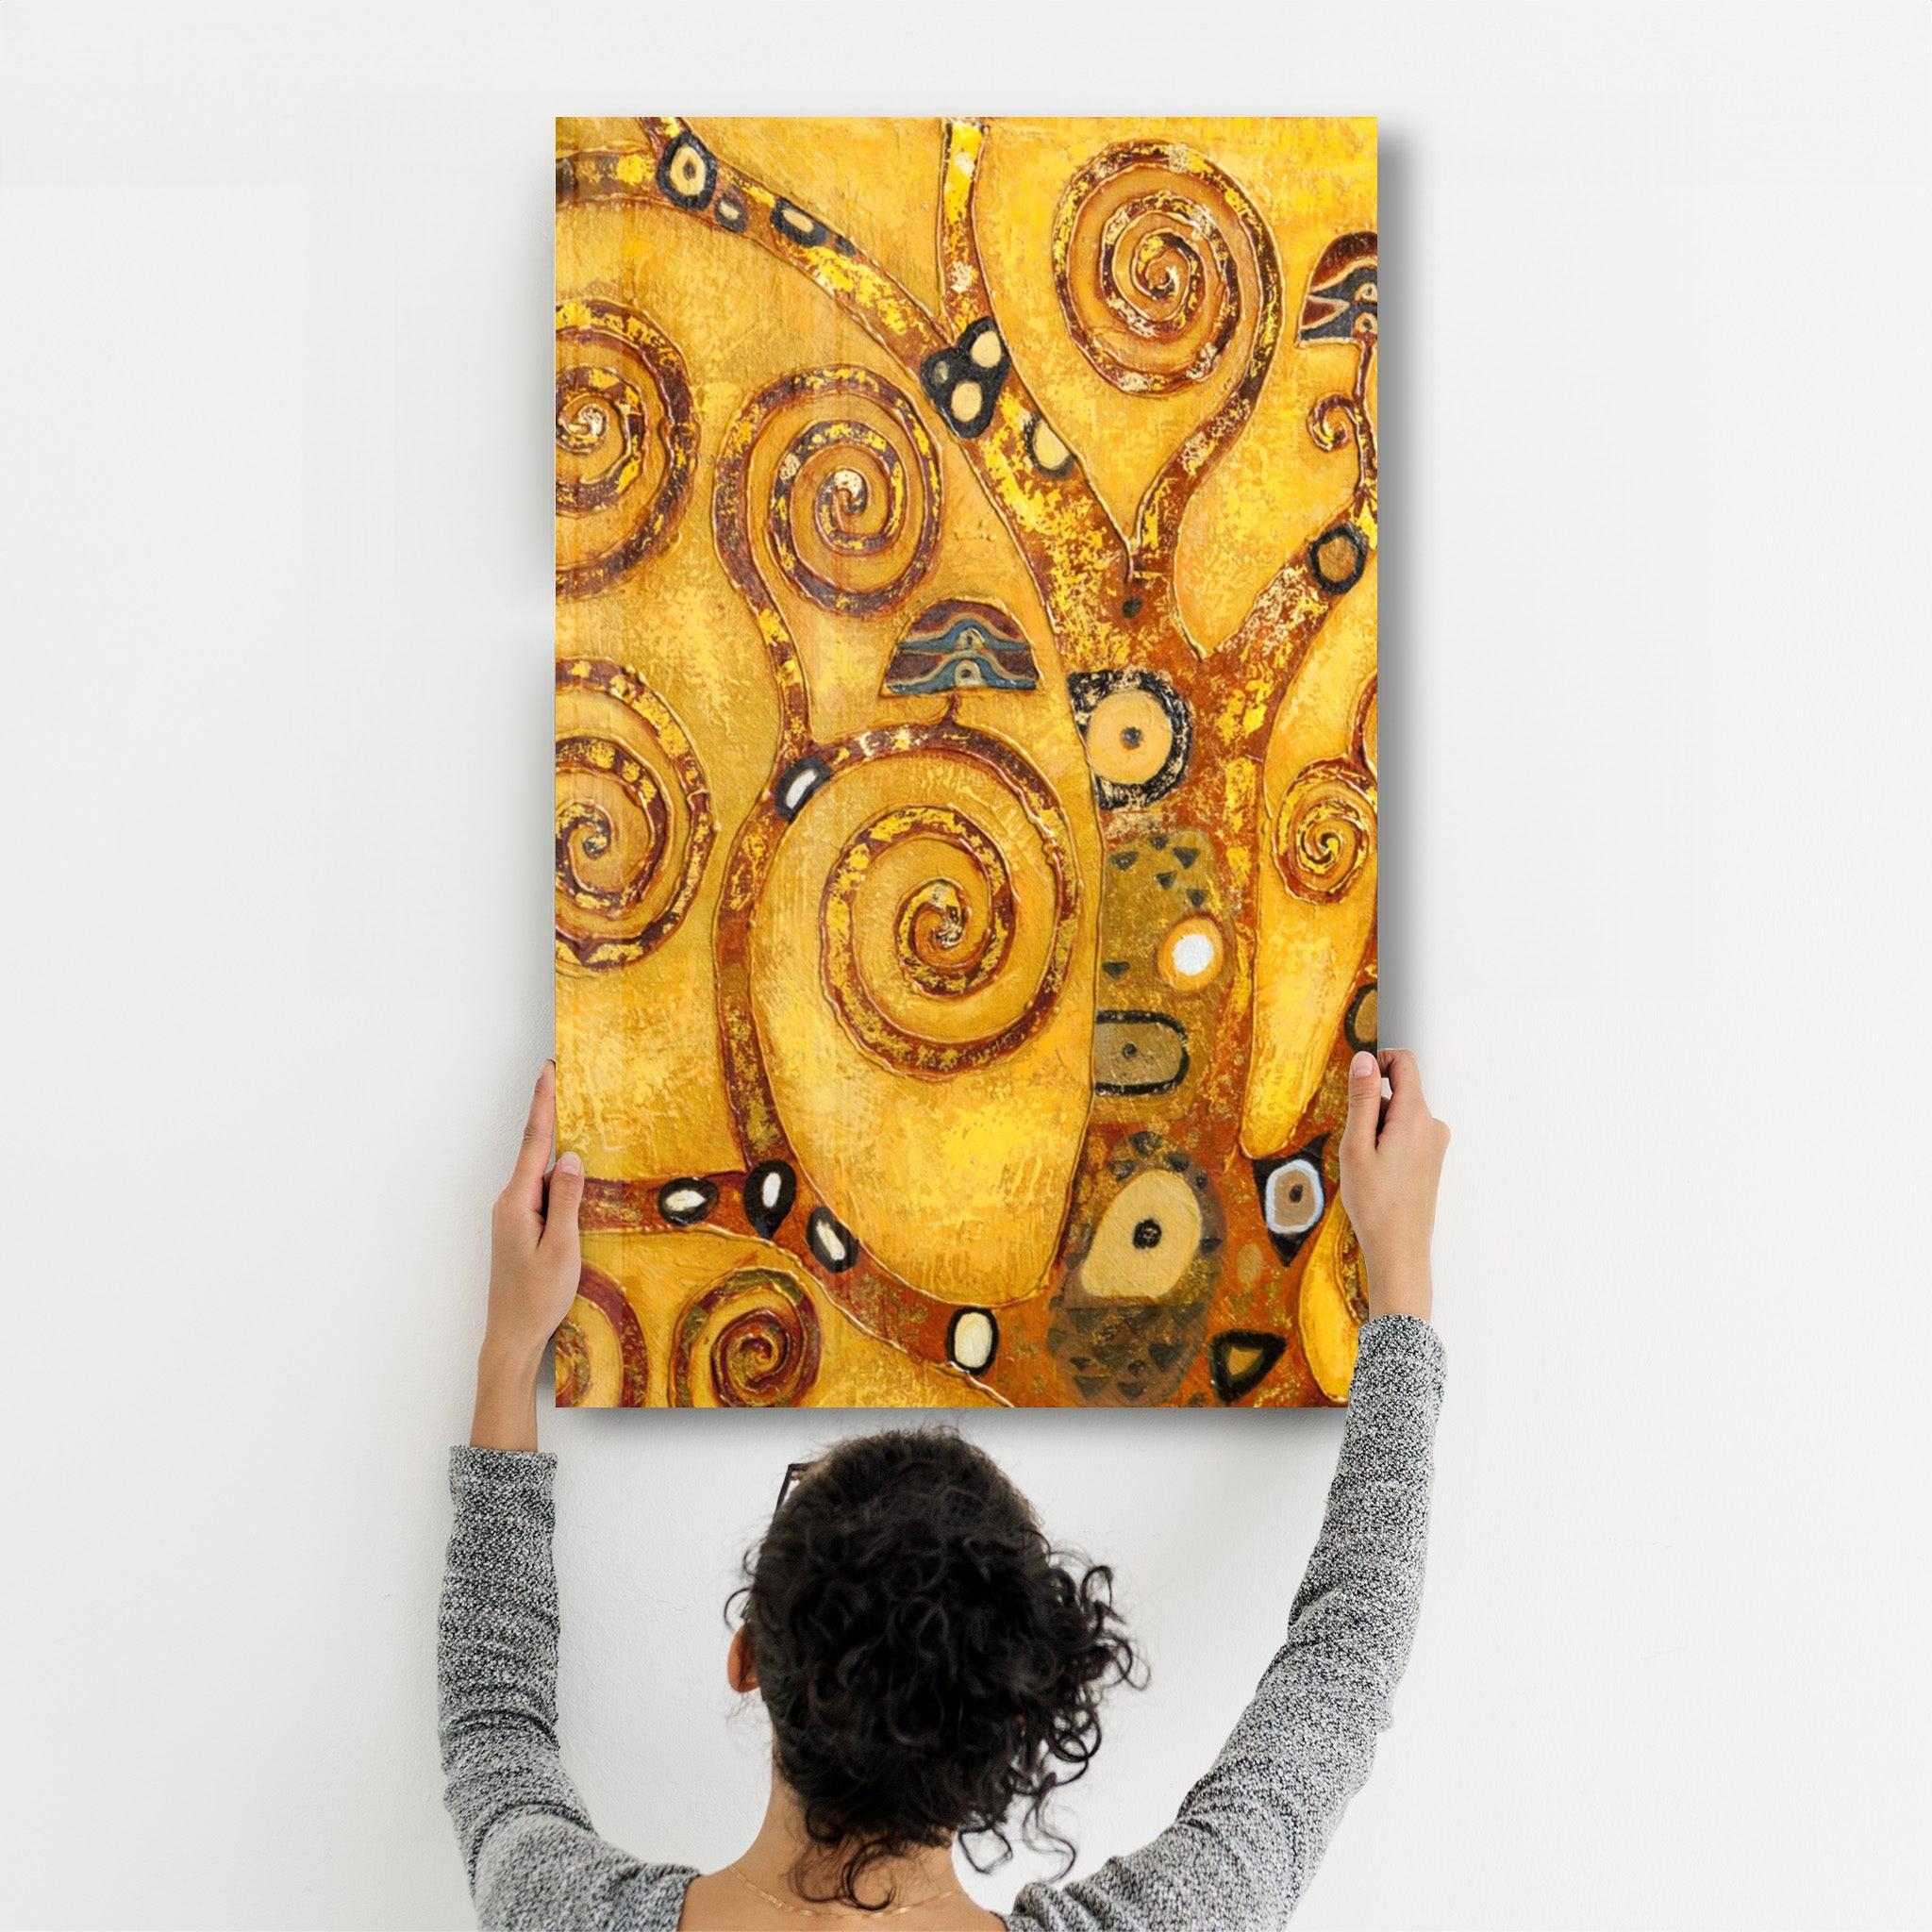 Abstract Golden Tree | Glass Wall Art - ArtDesigna Glass Printing Wall Art